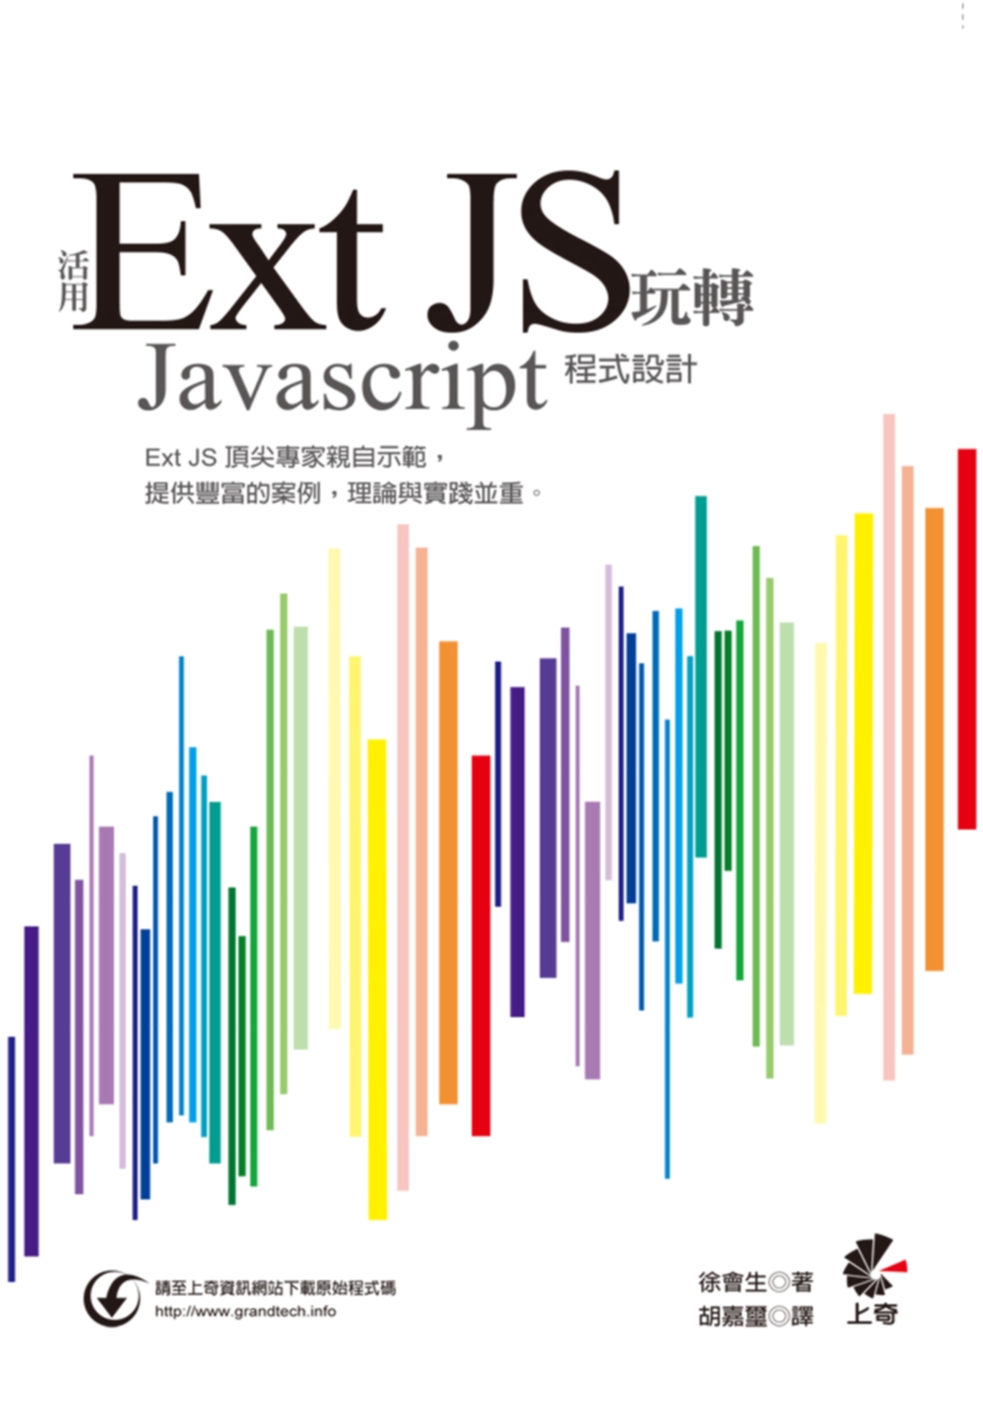 活用 Ext JS 玩轉Javascript程式設計